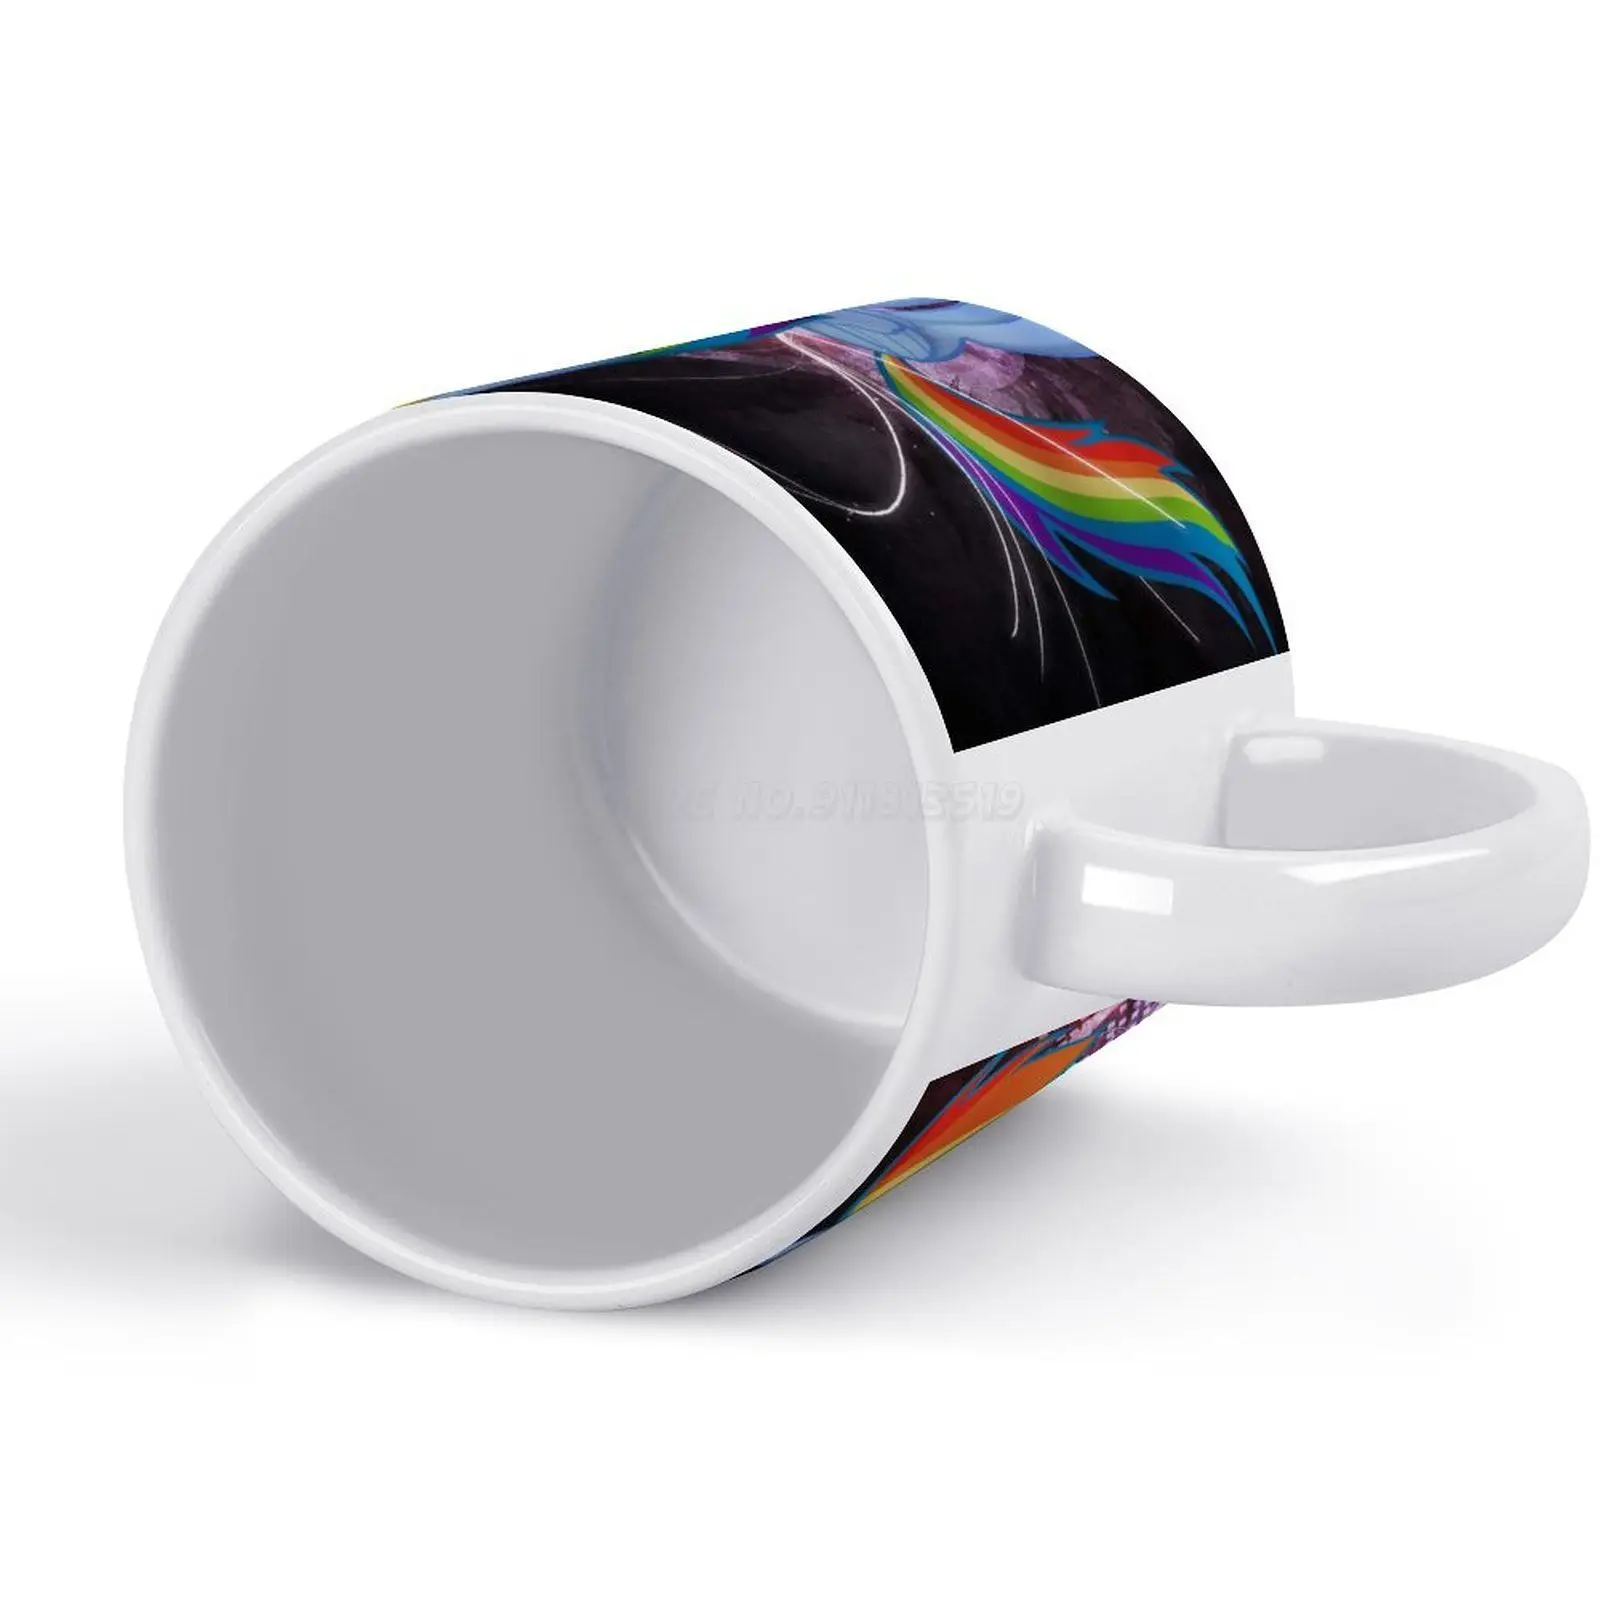 https://ae01.alicdn.com/kf/H87efbb8db44f459d88ed3376f4fbba126/Rainbow-White-Mug-New-Good-Quality-Print-Mug-11-Oz-Coffee-Cup-Rainbow-Dash-Rainbow-Dash.jpg